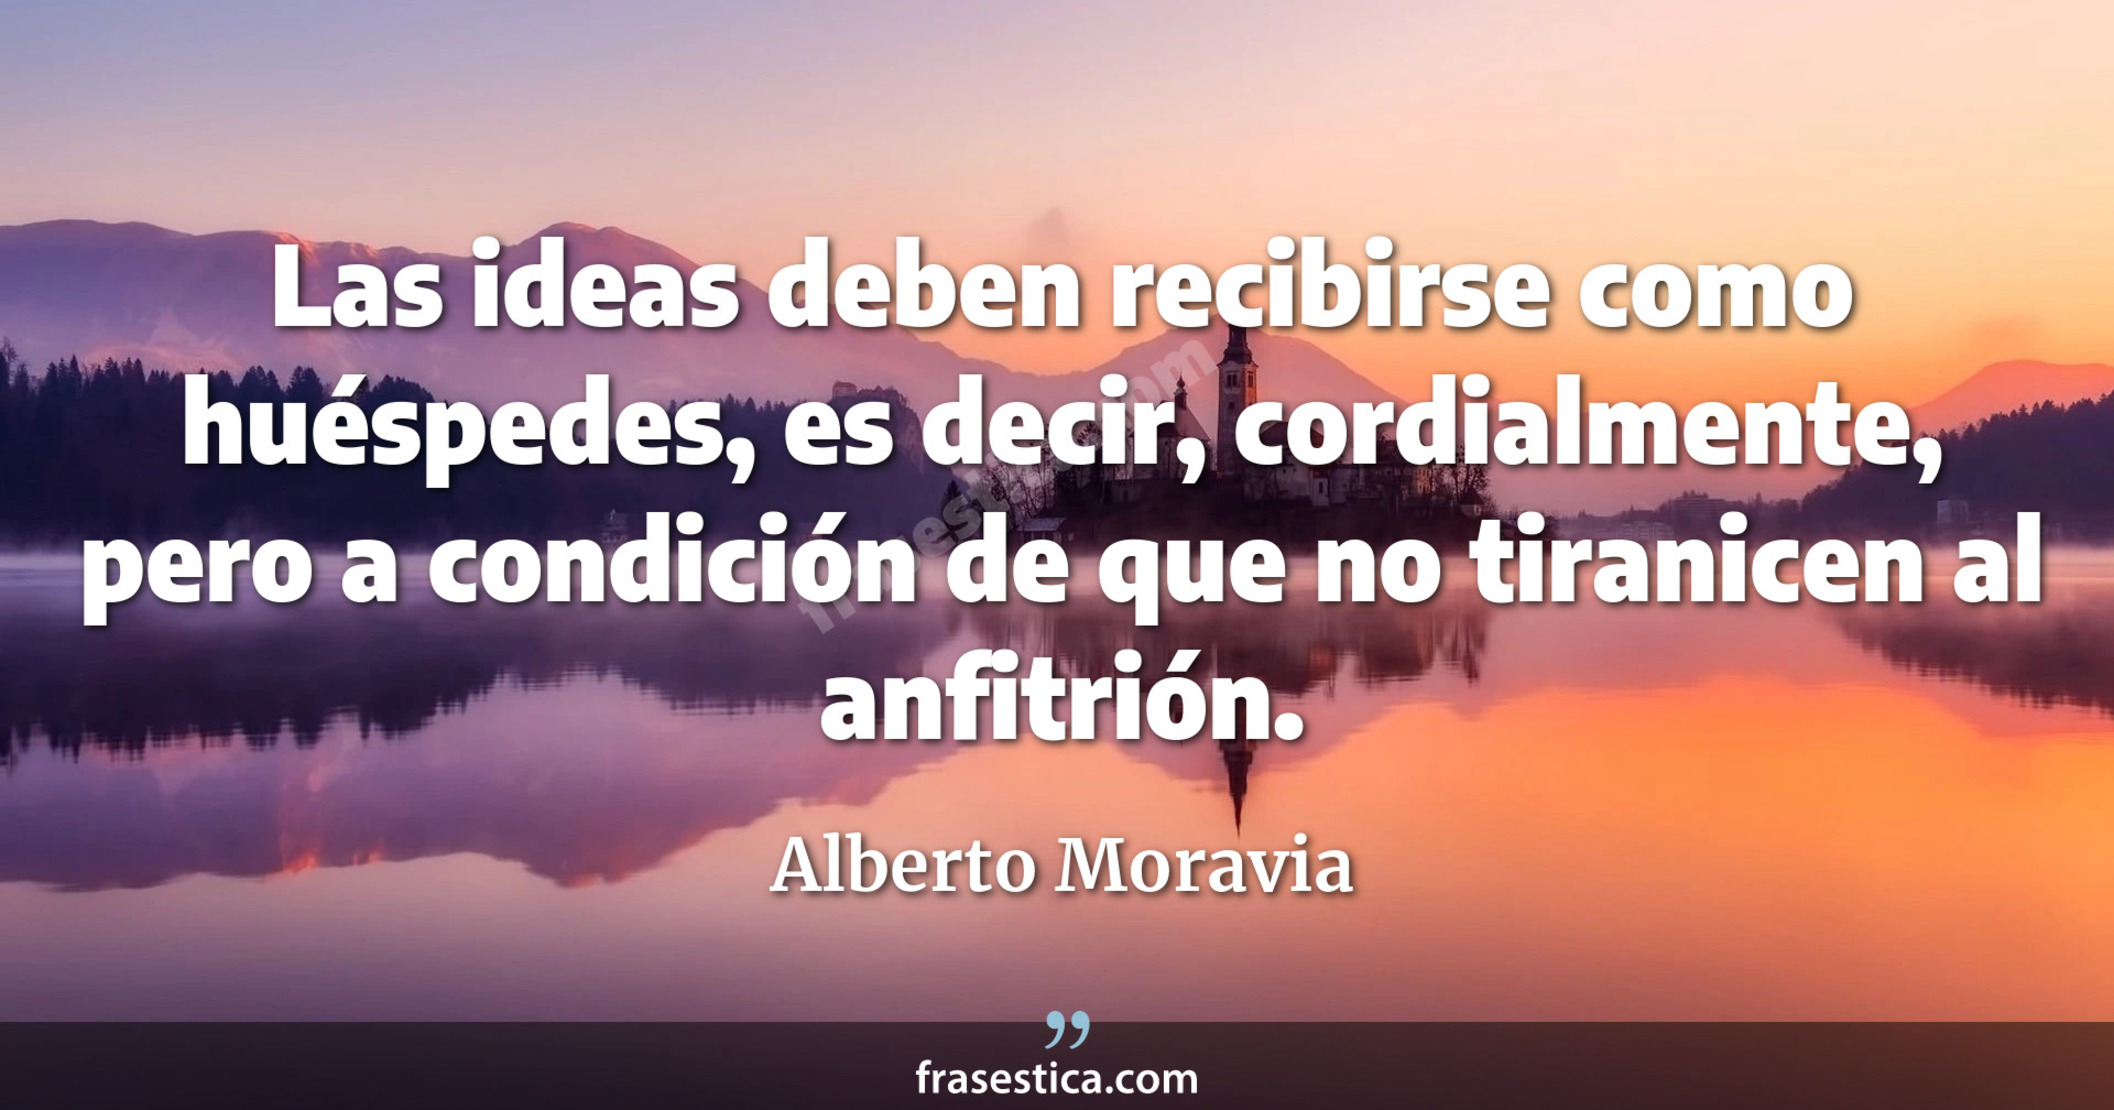 Las ideas deben recibirse como huéspedes, es decir, cordialmente, pero a condición de que no tiranicen al anfitrión. - Alberto Moravia